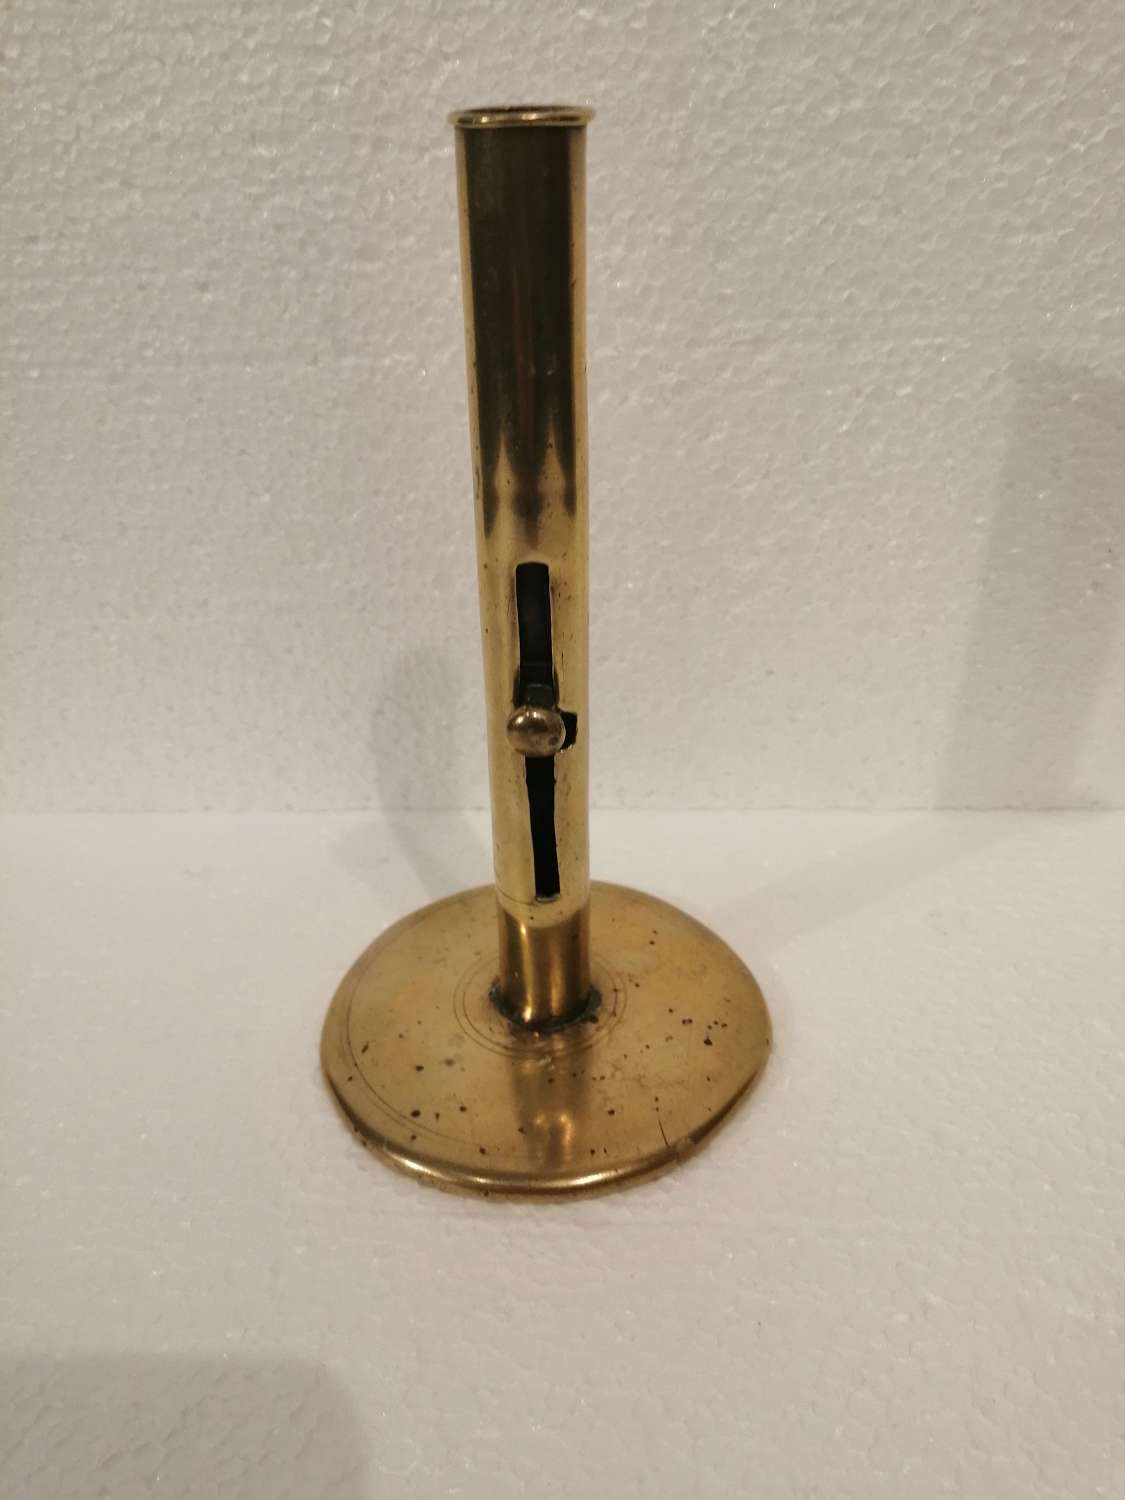 An early 19th century brass hog scraper candlestick